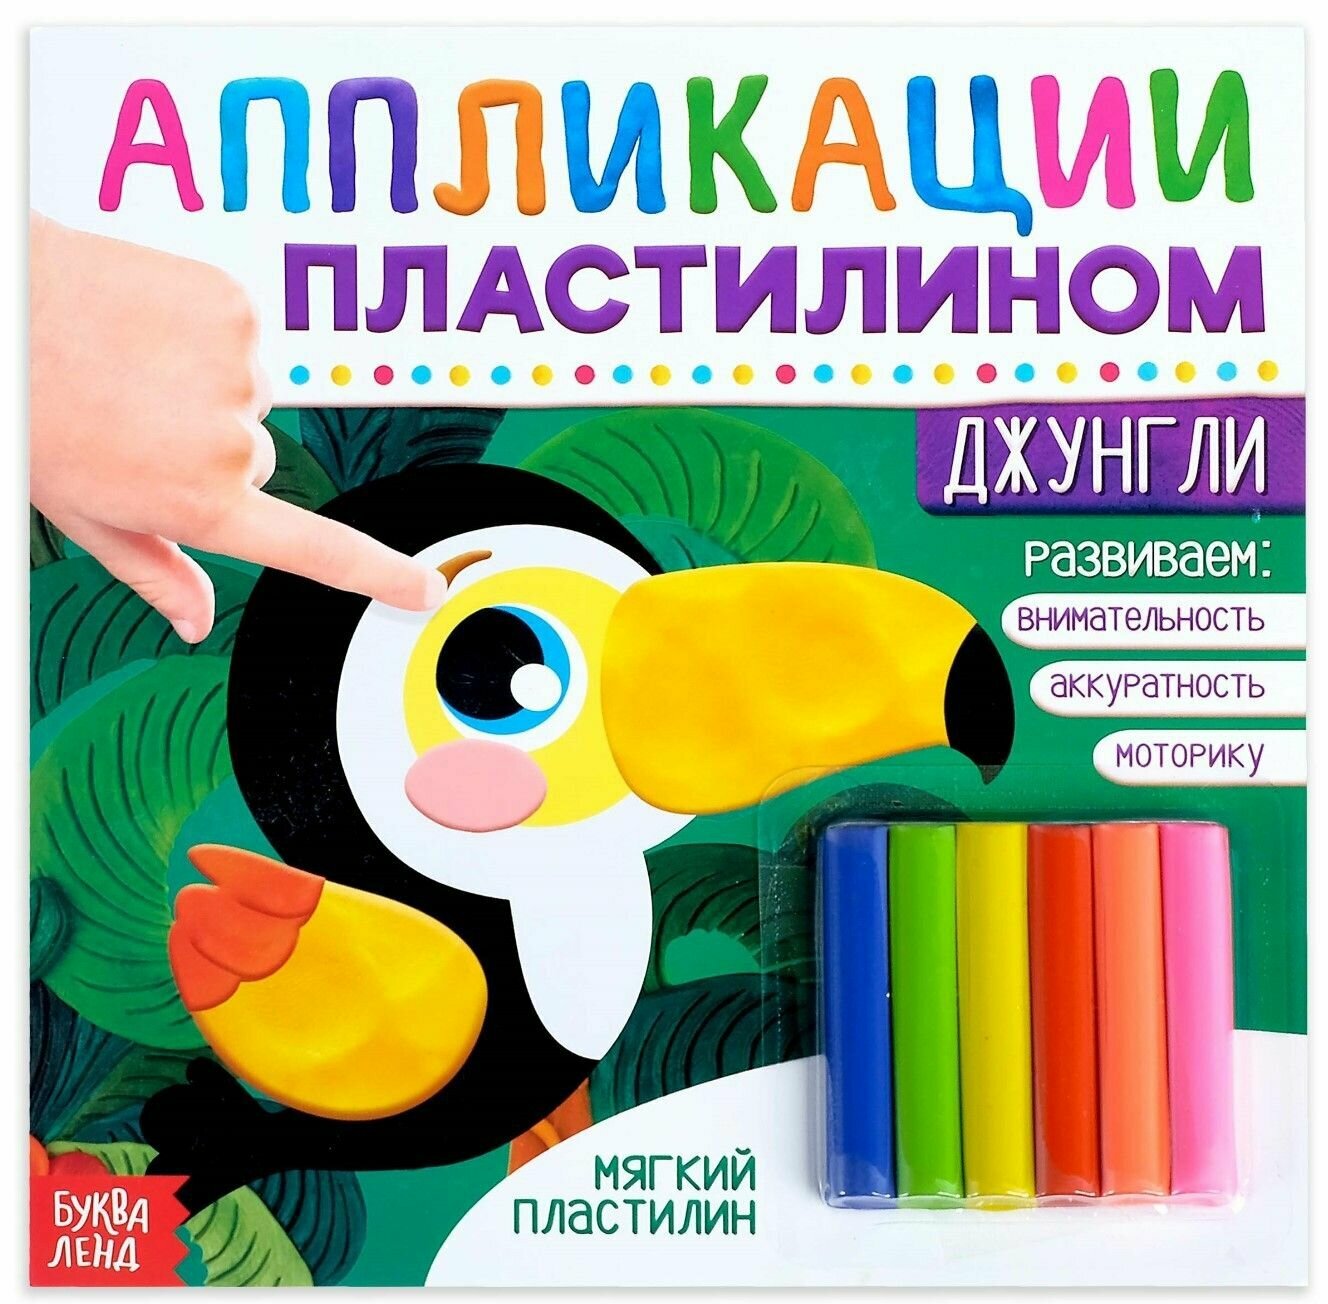 Книга с аппликациями и мягким пластилином, набор для лепки и детского творчества, учим животных и цифры, цвета микс